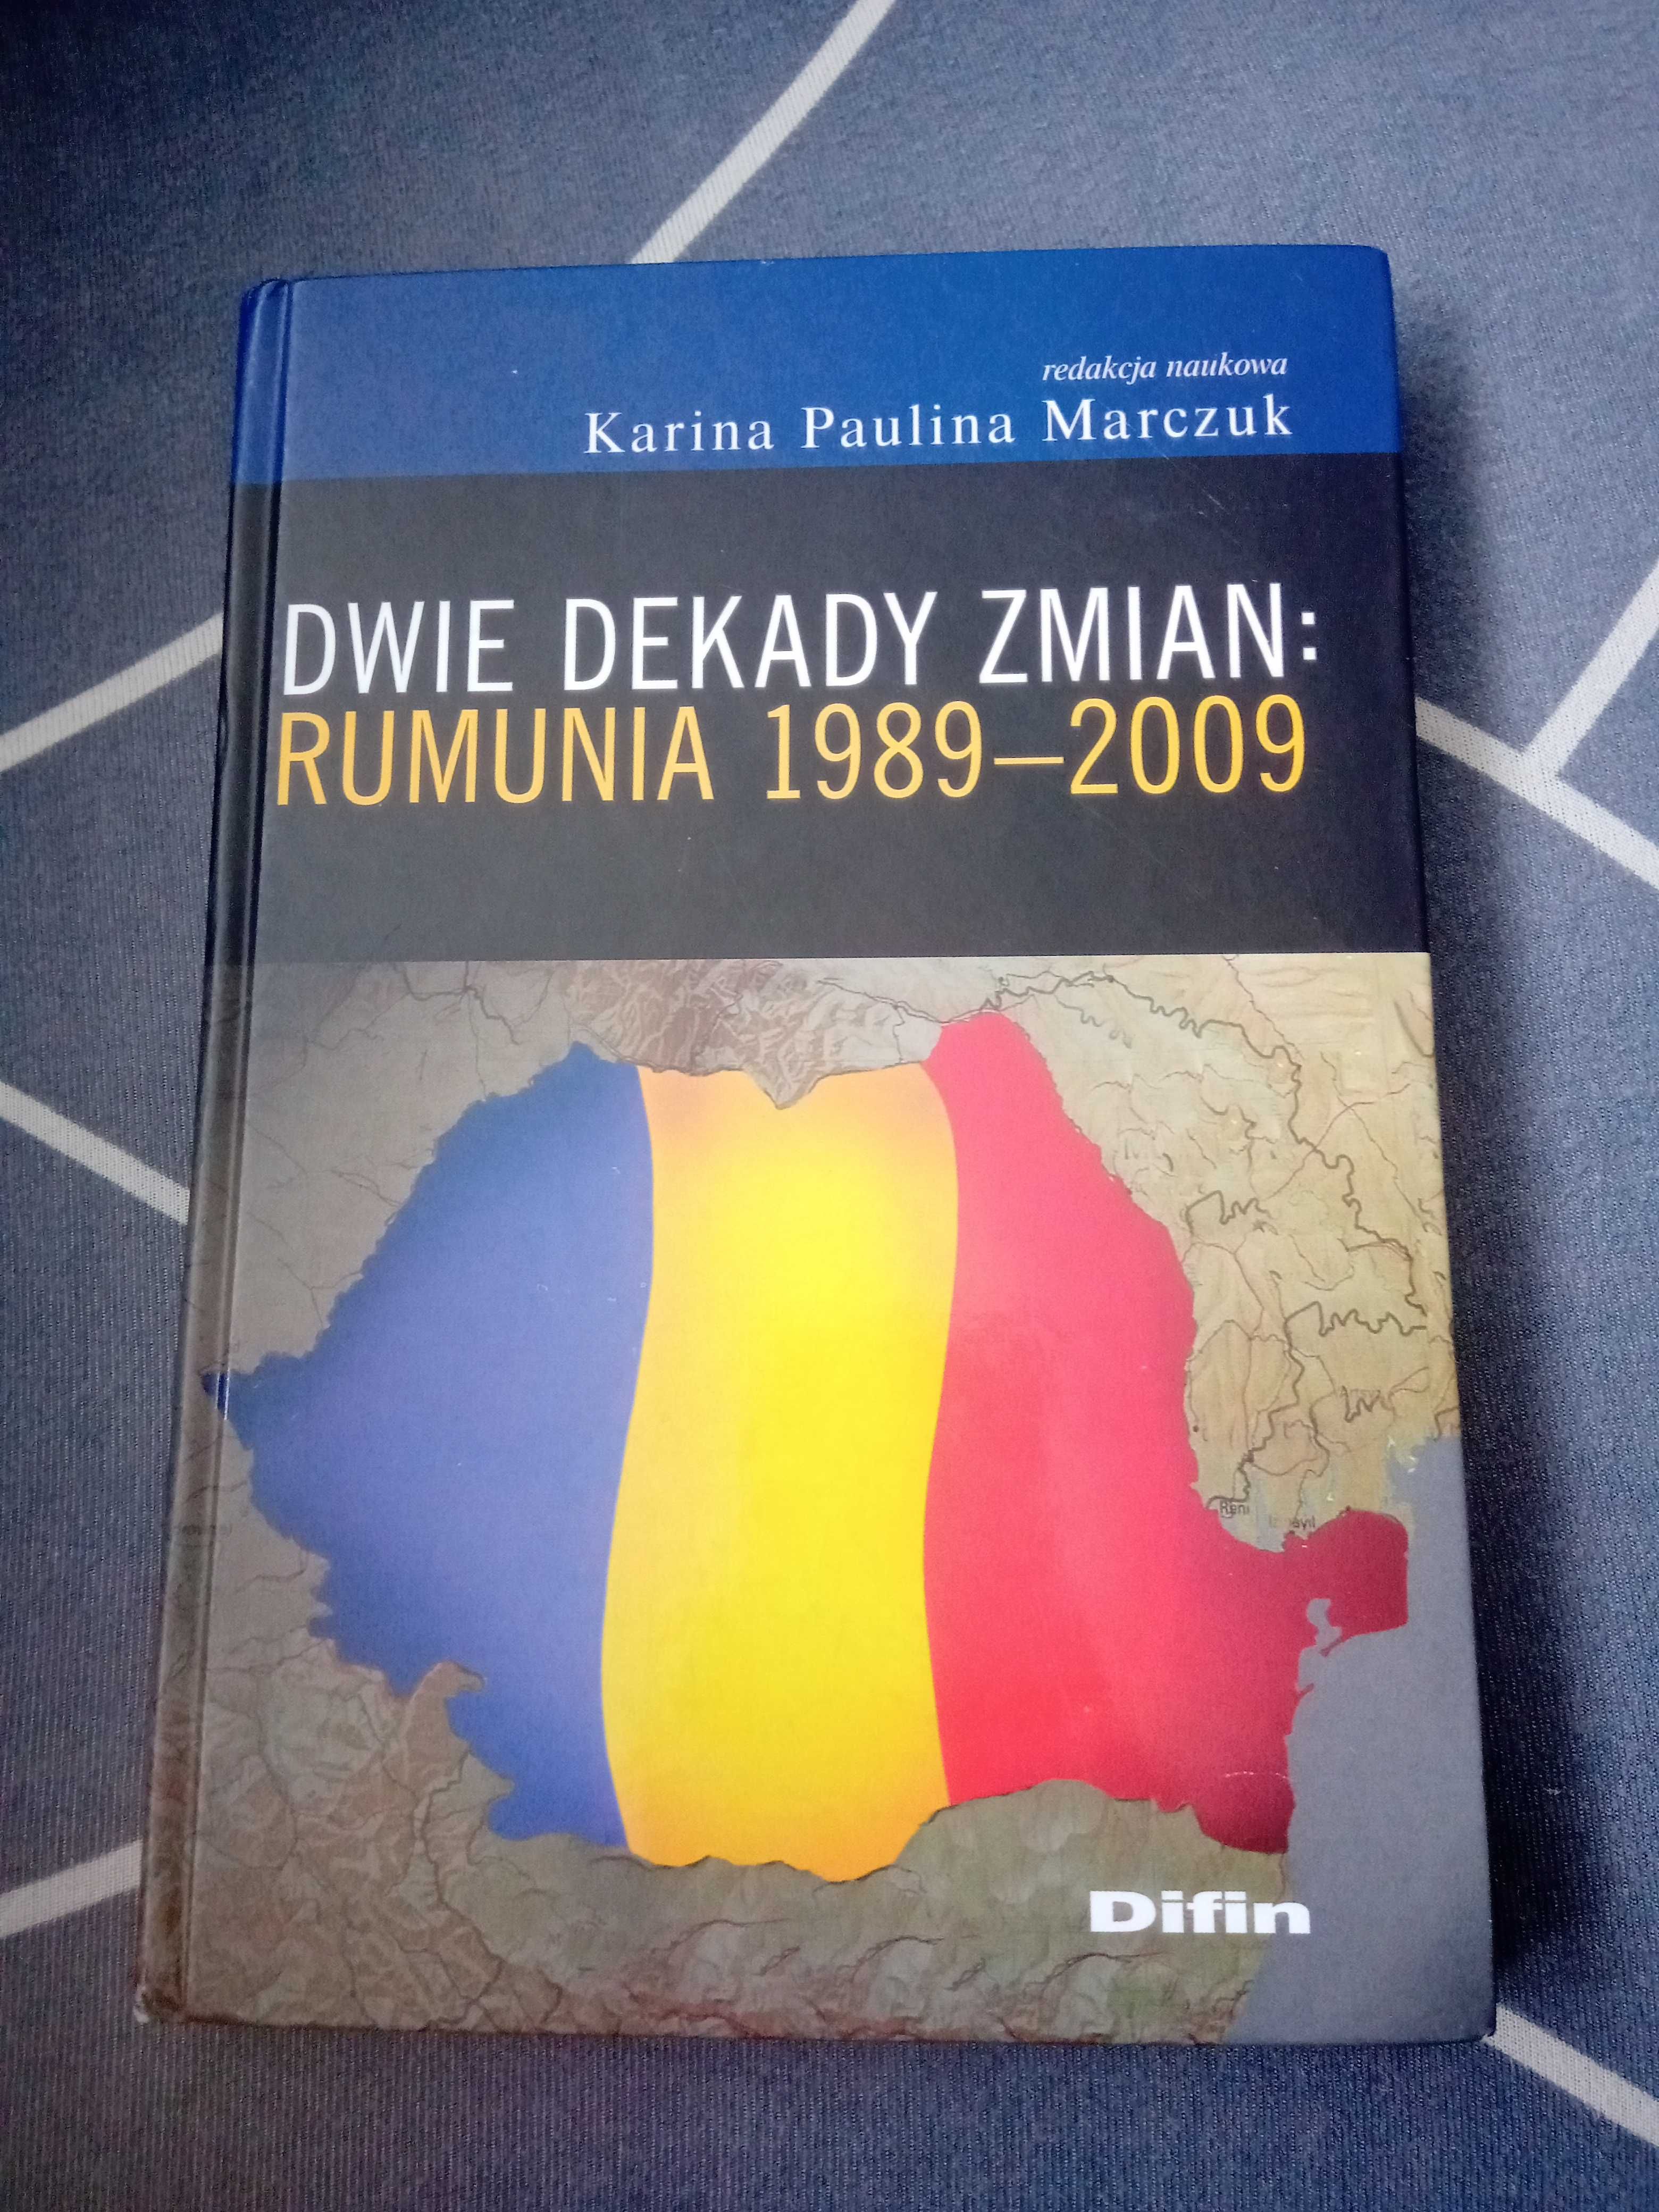 Sprzedam książkę Dwie dekady zmian, Rumunia 1989 - 2009